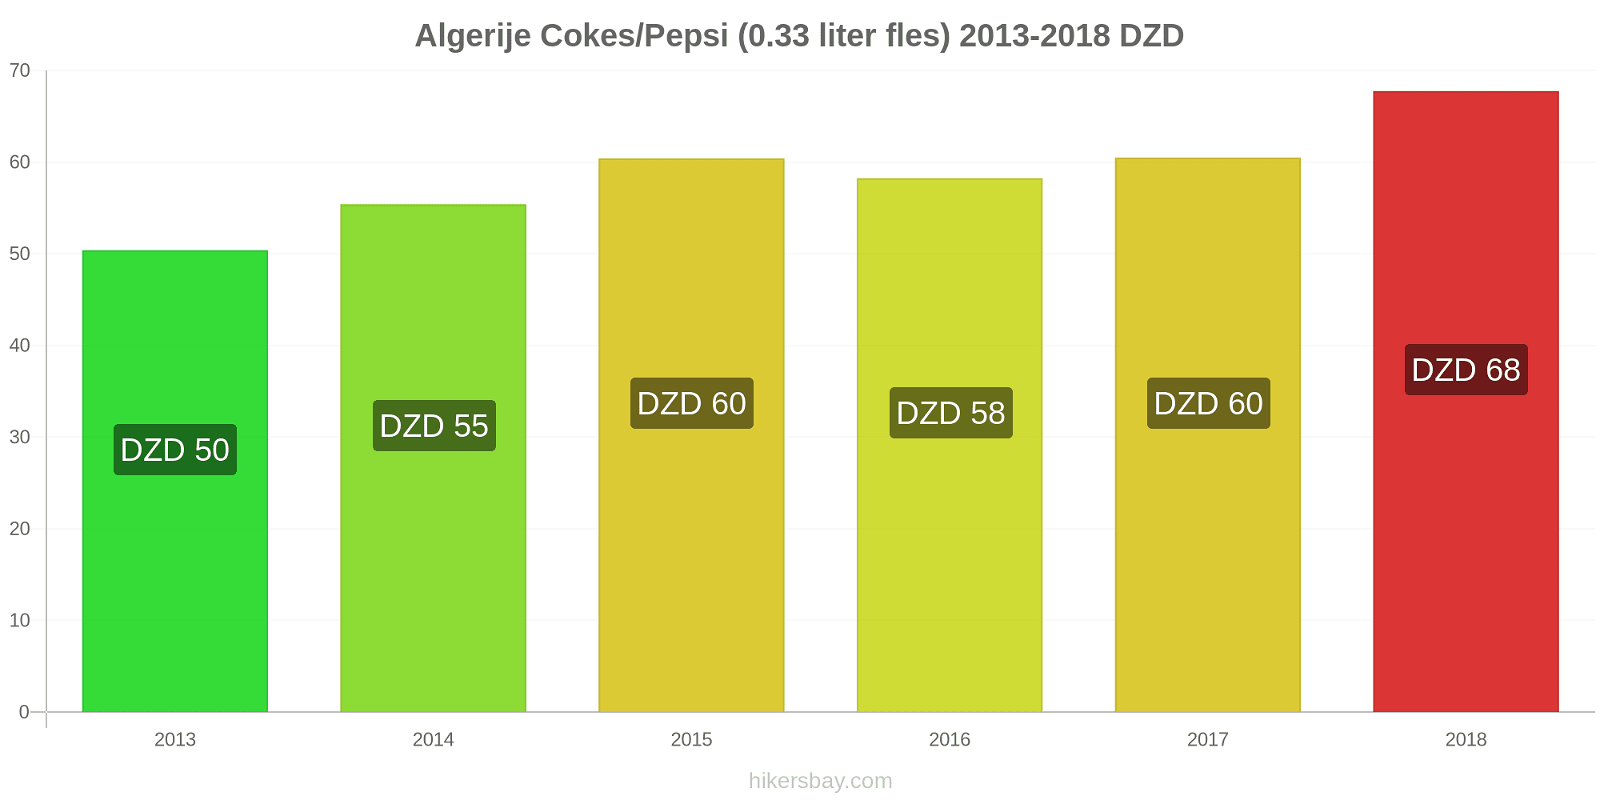 Algerije prijswijzigingen Cokes/Pepsi (0,33 literfles) hikersbay.com